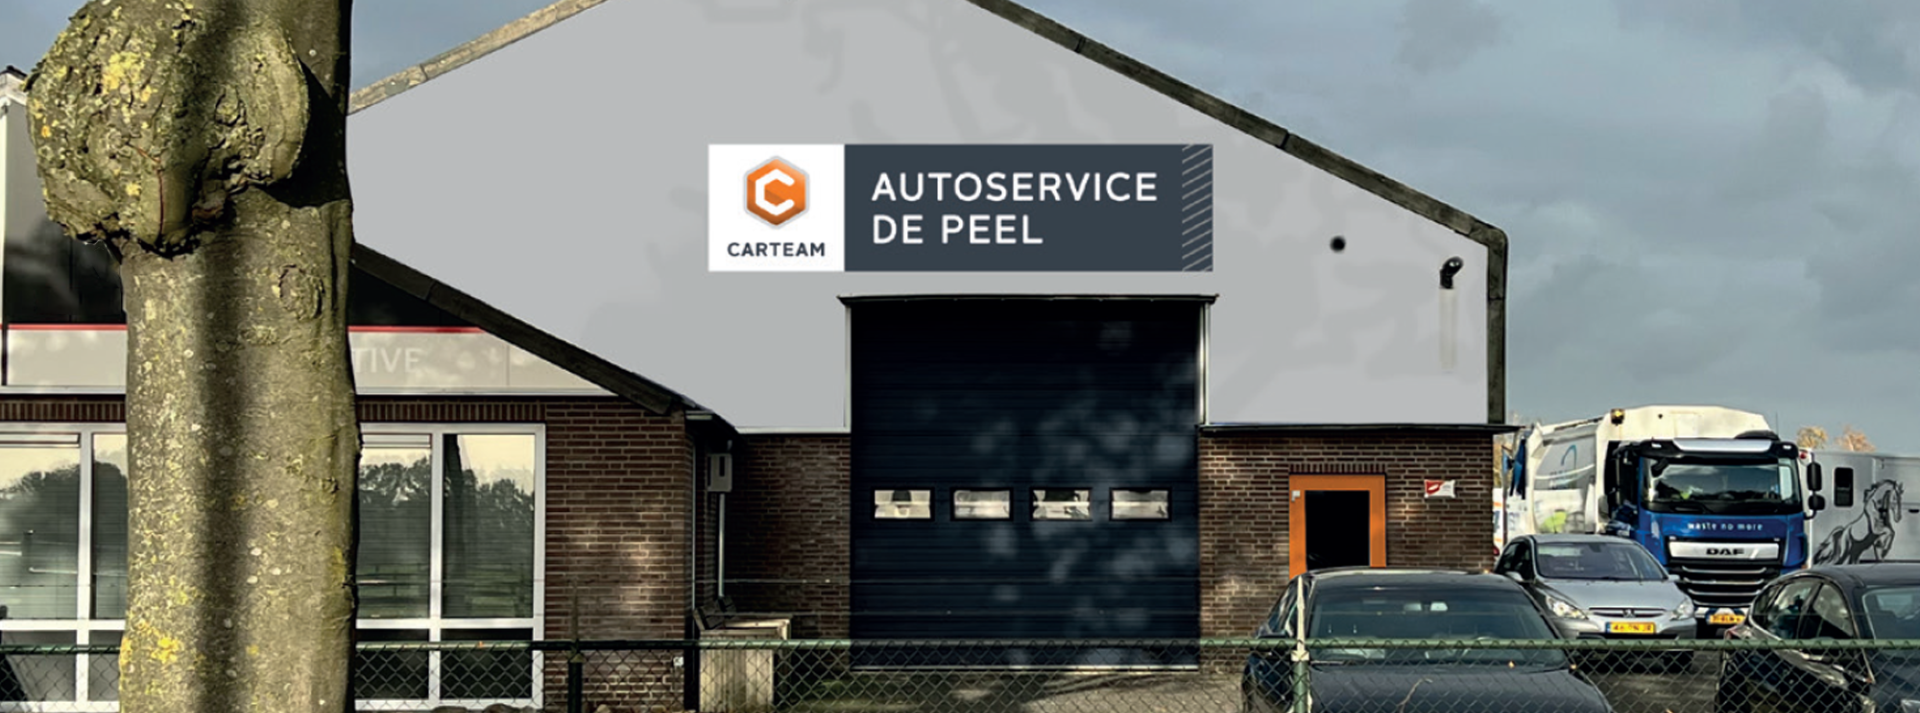 Carteam Autoservice de Peel